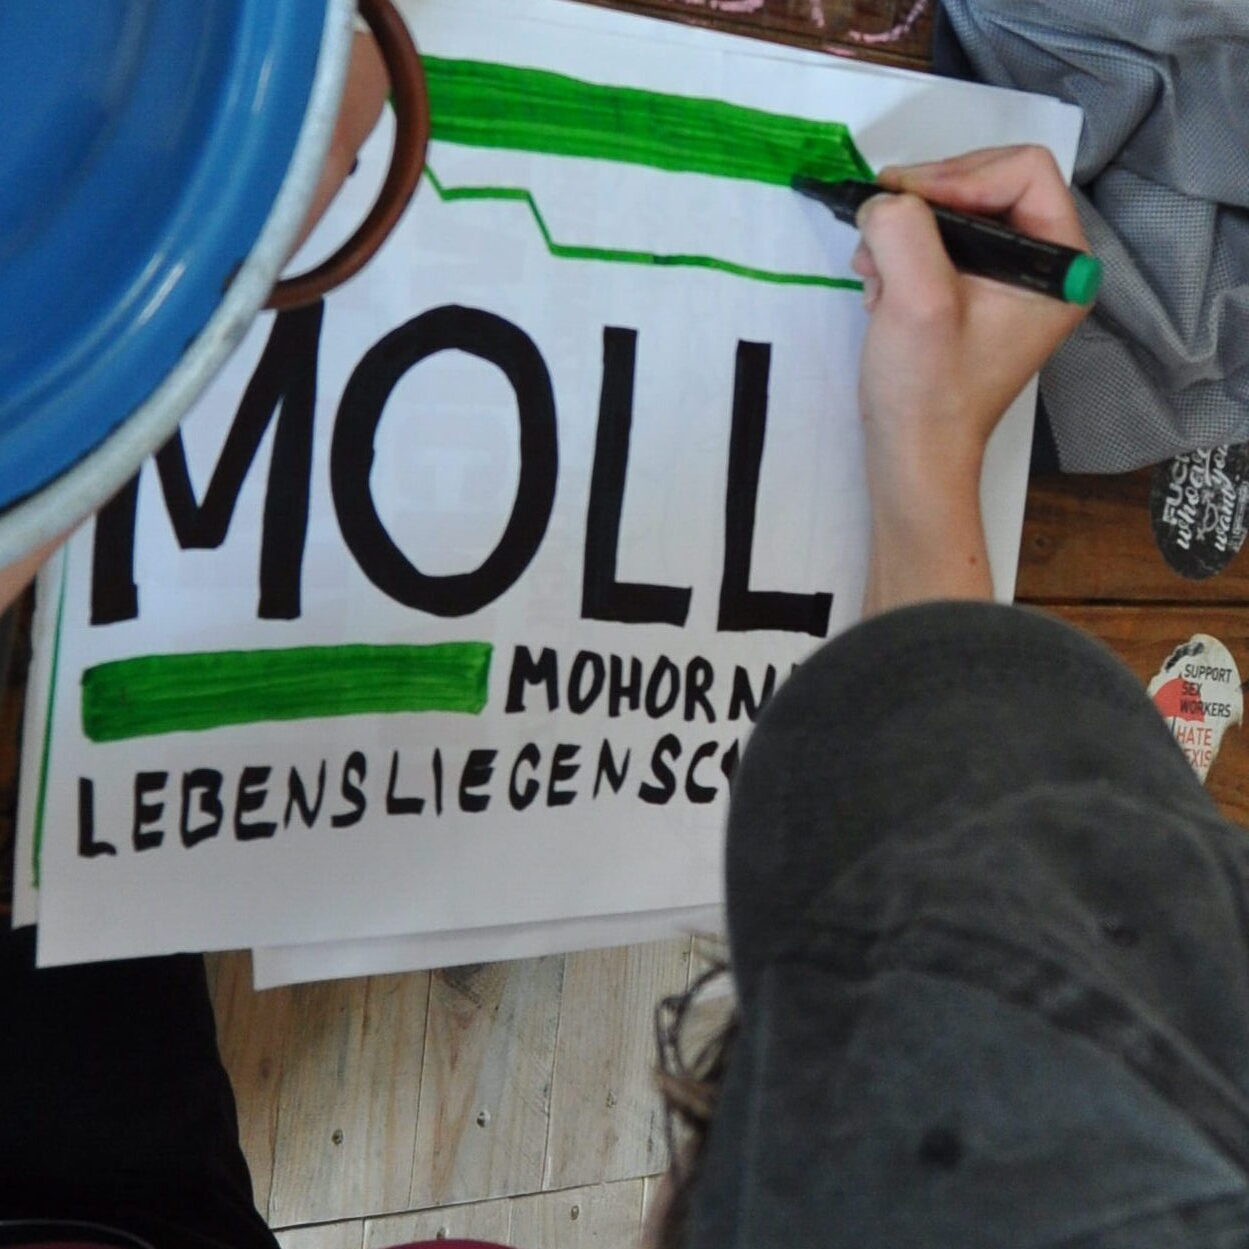 Auf dem Bild zu sehen ist eine Person, die ein Plakat malt auf dem "Molli - Mohorner Lebensliegenschaft" geschrieben steht.